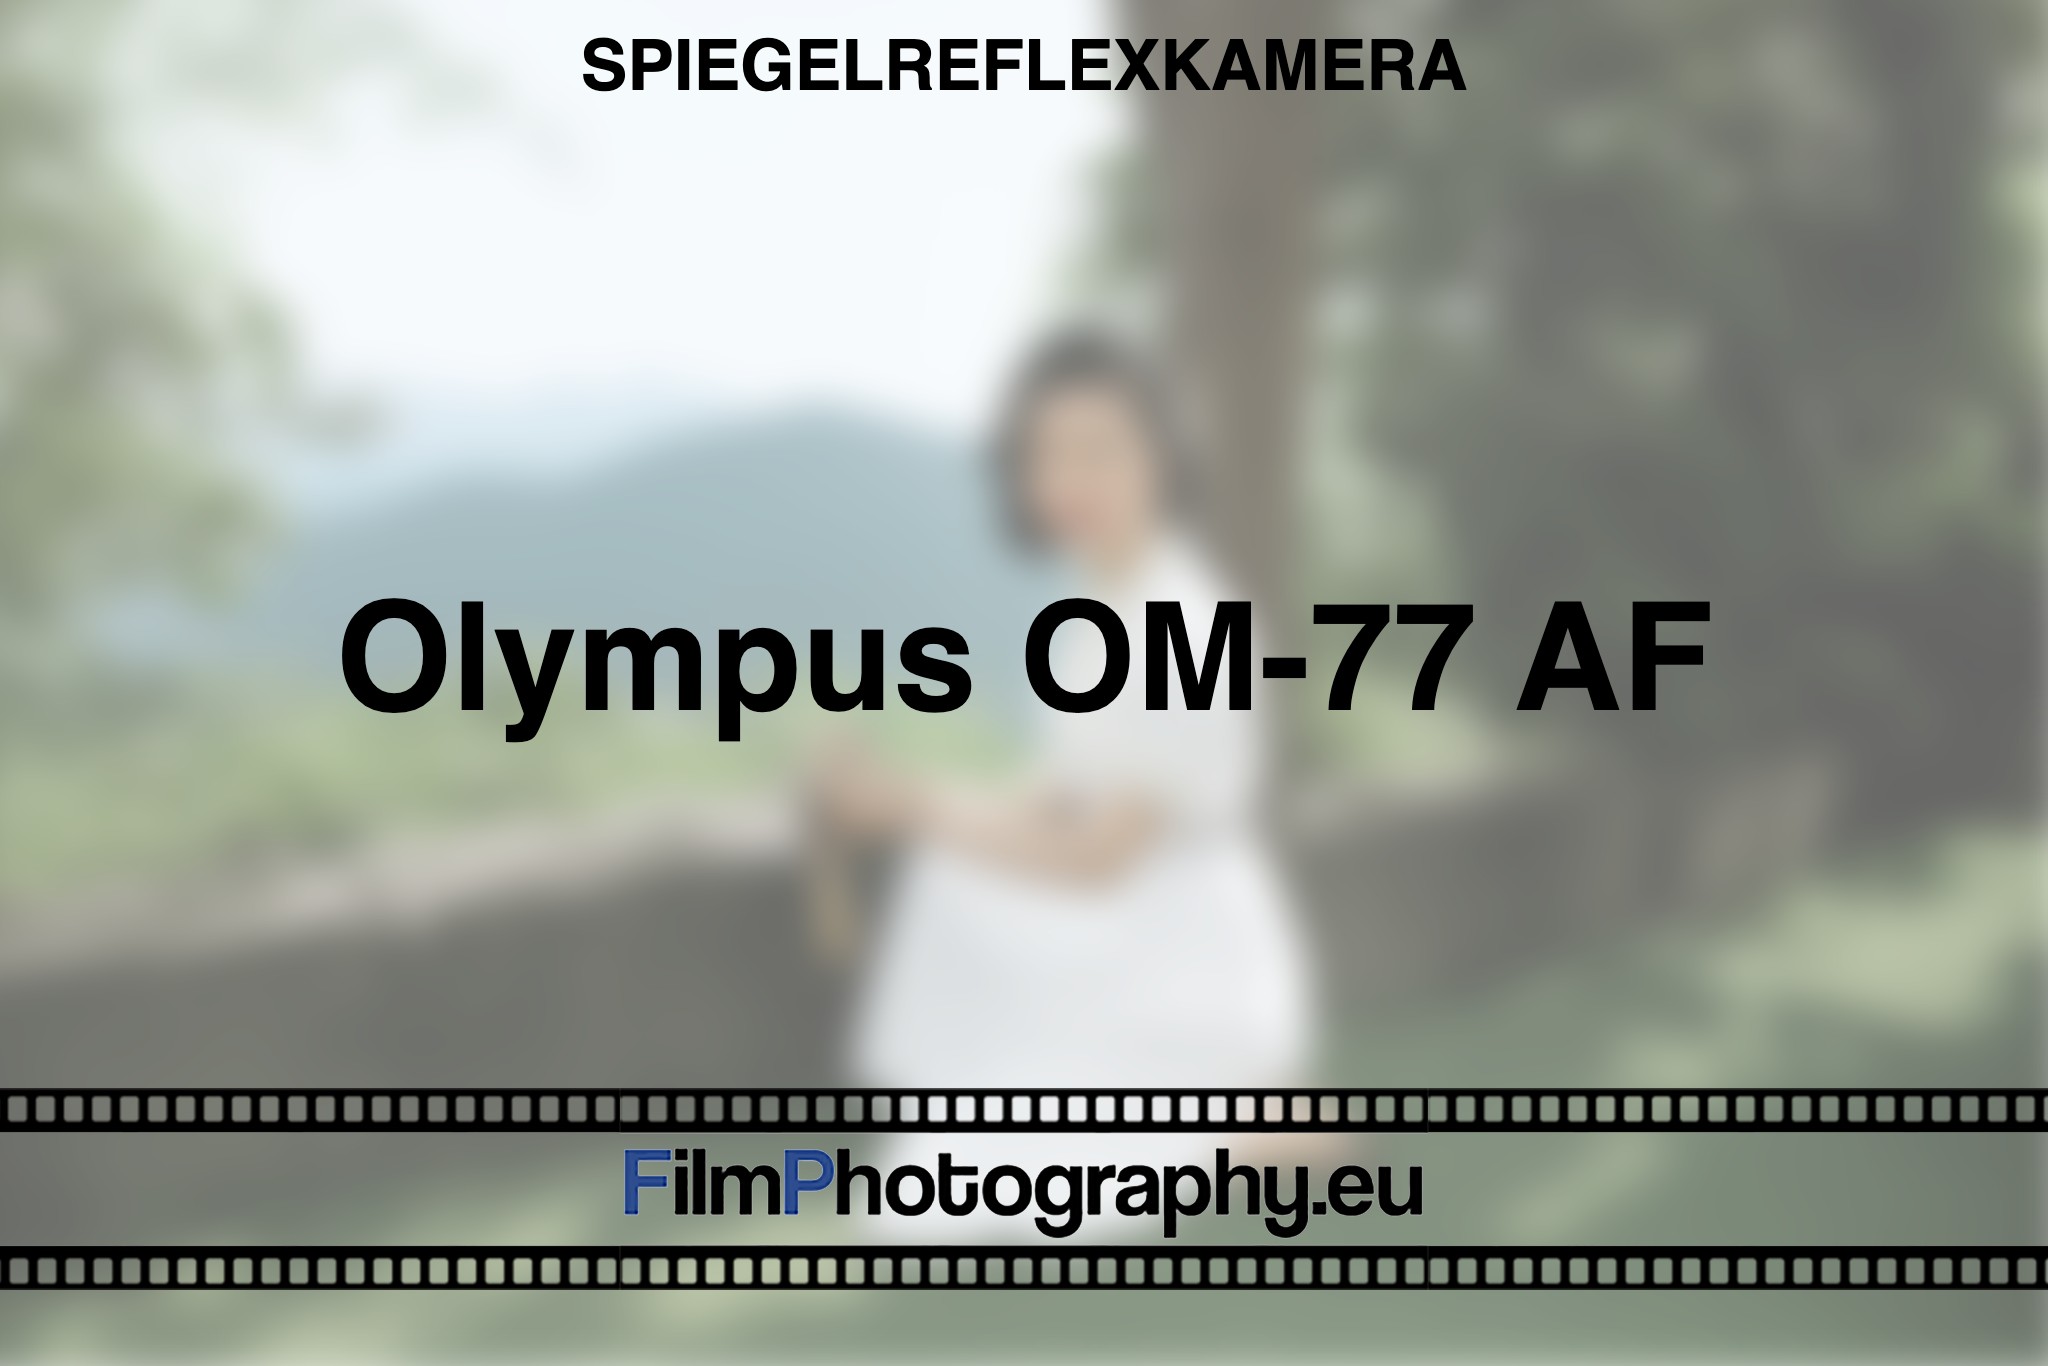 olympus-om-77-af-spiegelreflexkamera-bnv